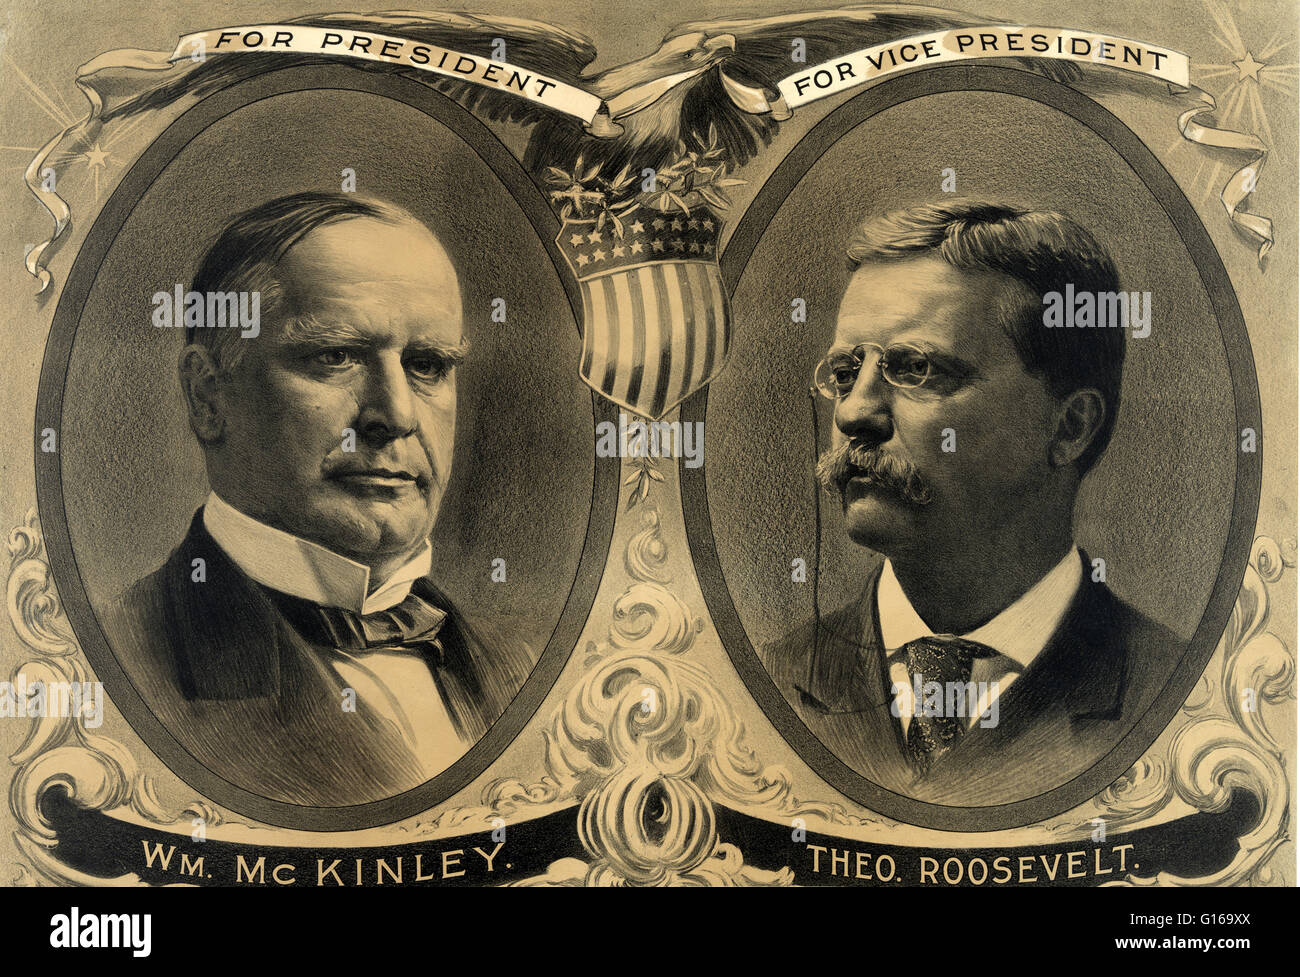 William McKinley e Theodore Roosevelt campagna di manifesti, 1900William McKinley (Gennaio 29, 1843 - 14 settembre 1901) era il venticinquesimo Presidente degli Stati Uniti (1897-1901). Egli è stato l'ultimo Presidente per avere servito nella guerra civile americana. Dopo il wa Foto Stock